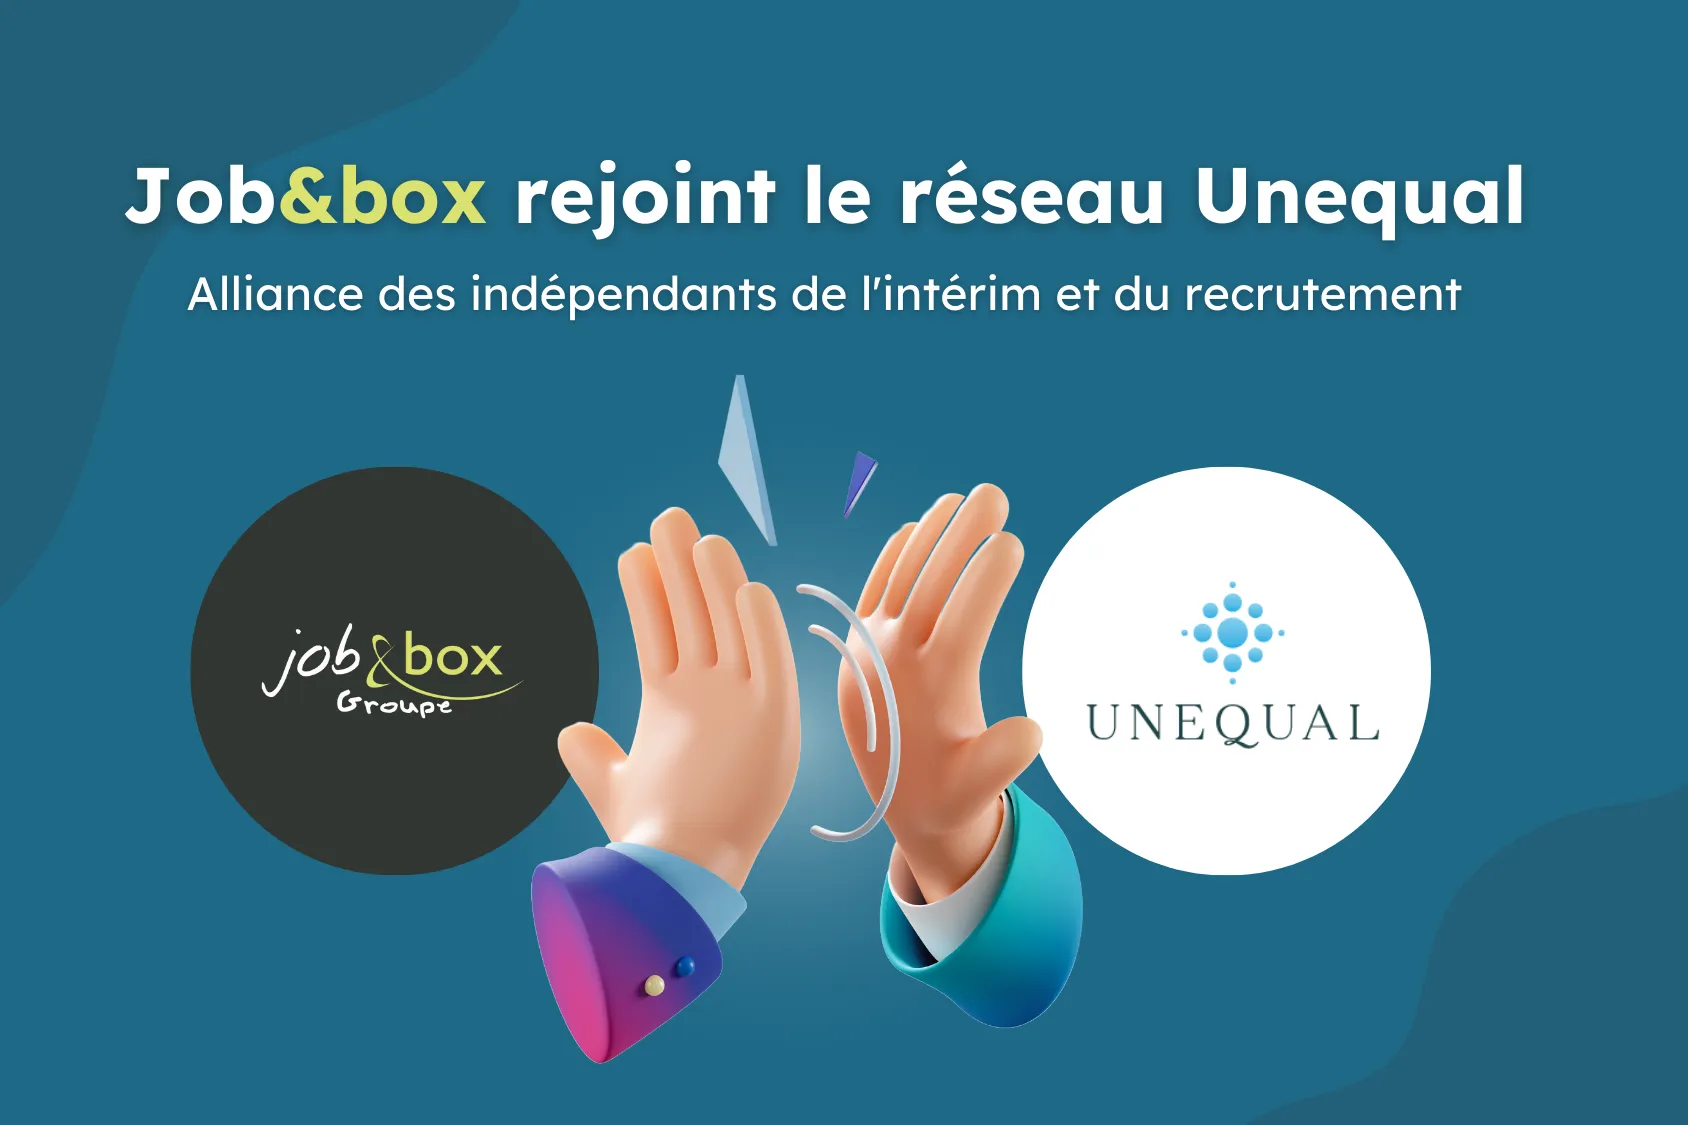 Job&Box-groupe-intérim-recrutement-breton-normand-réseau-Unequal